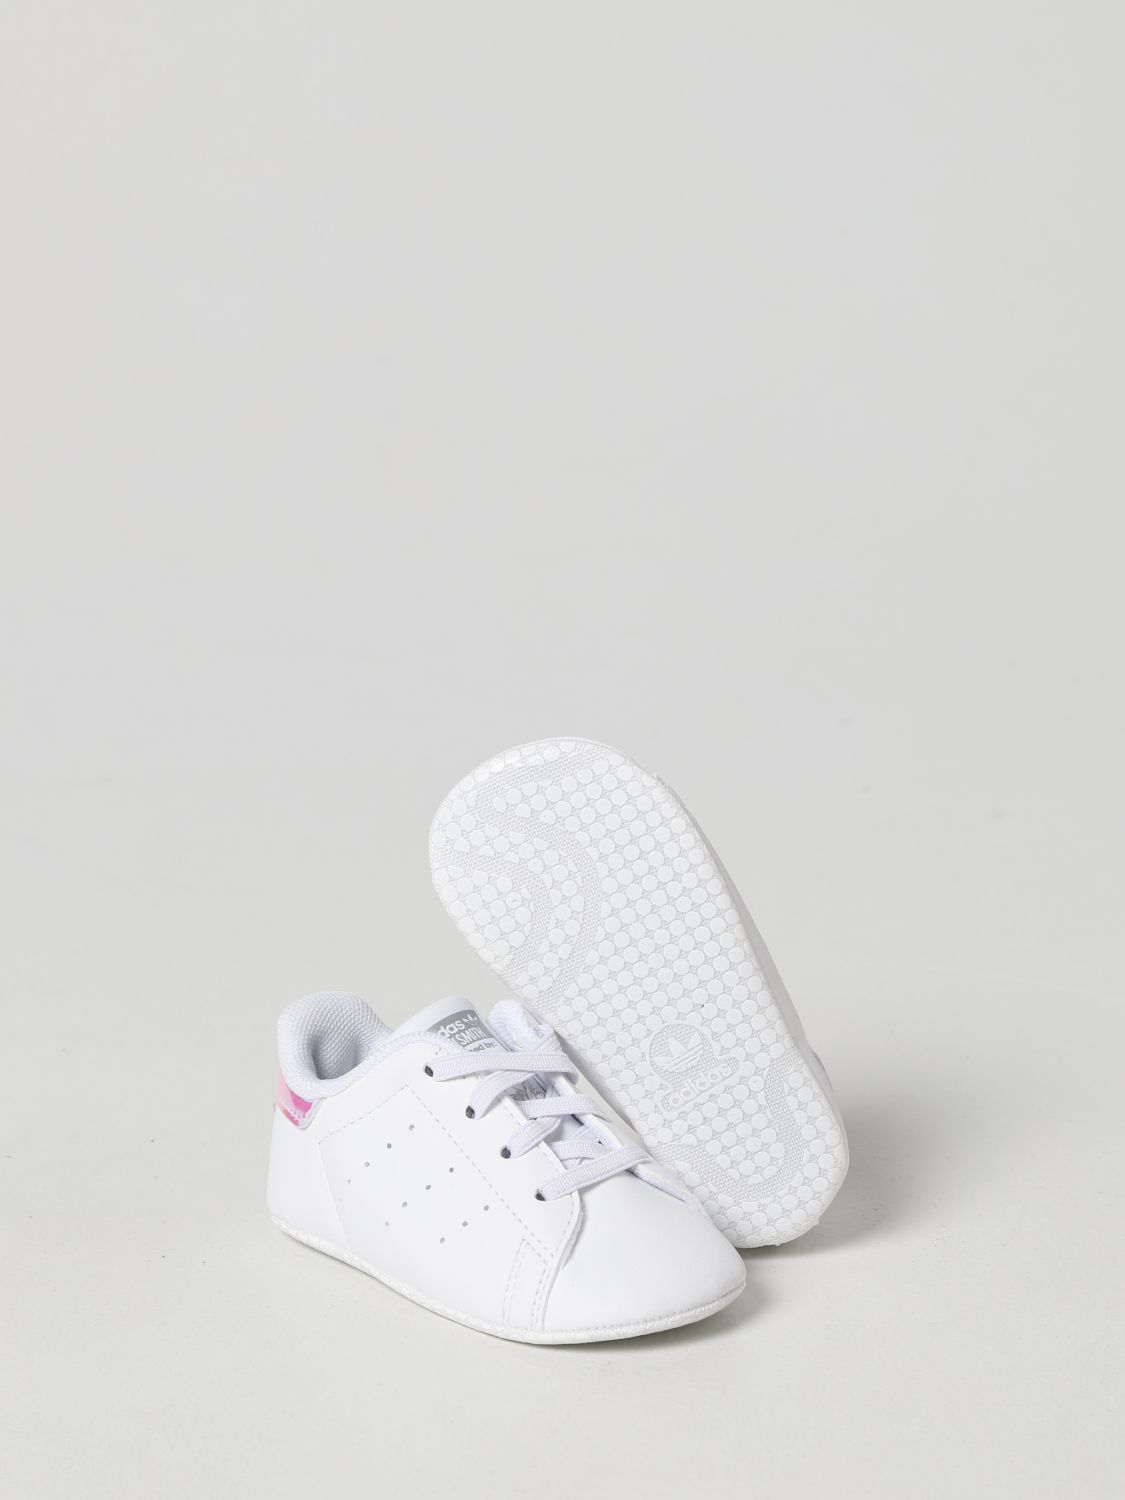 ADIDAS ORIGINALS: Zapatos para bebé, | Zapatos Adidas Originals FY7892 en línea GIGLIO.COM